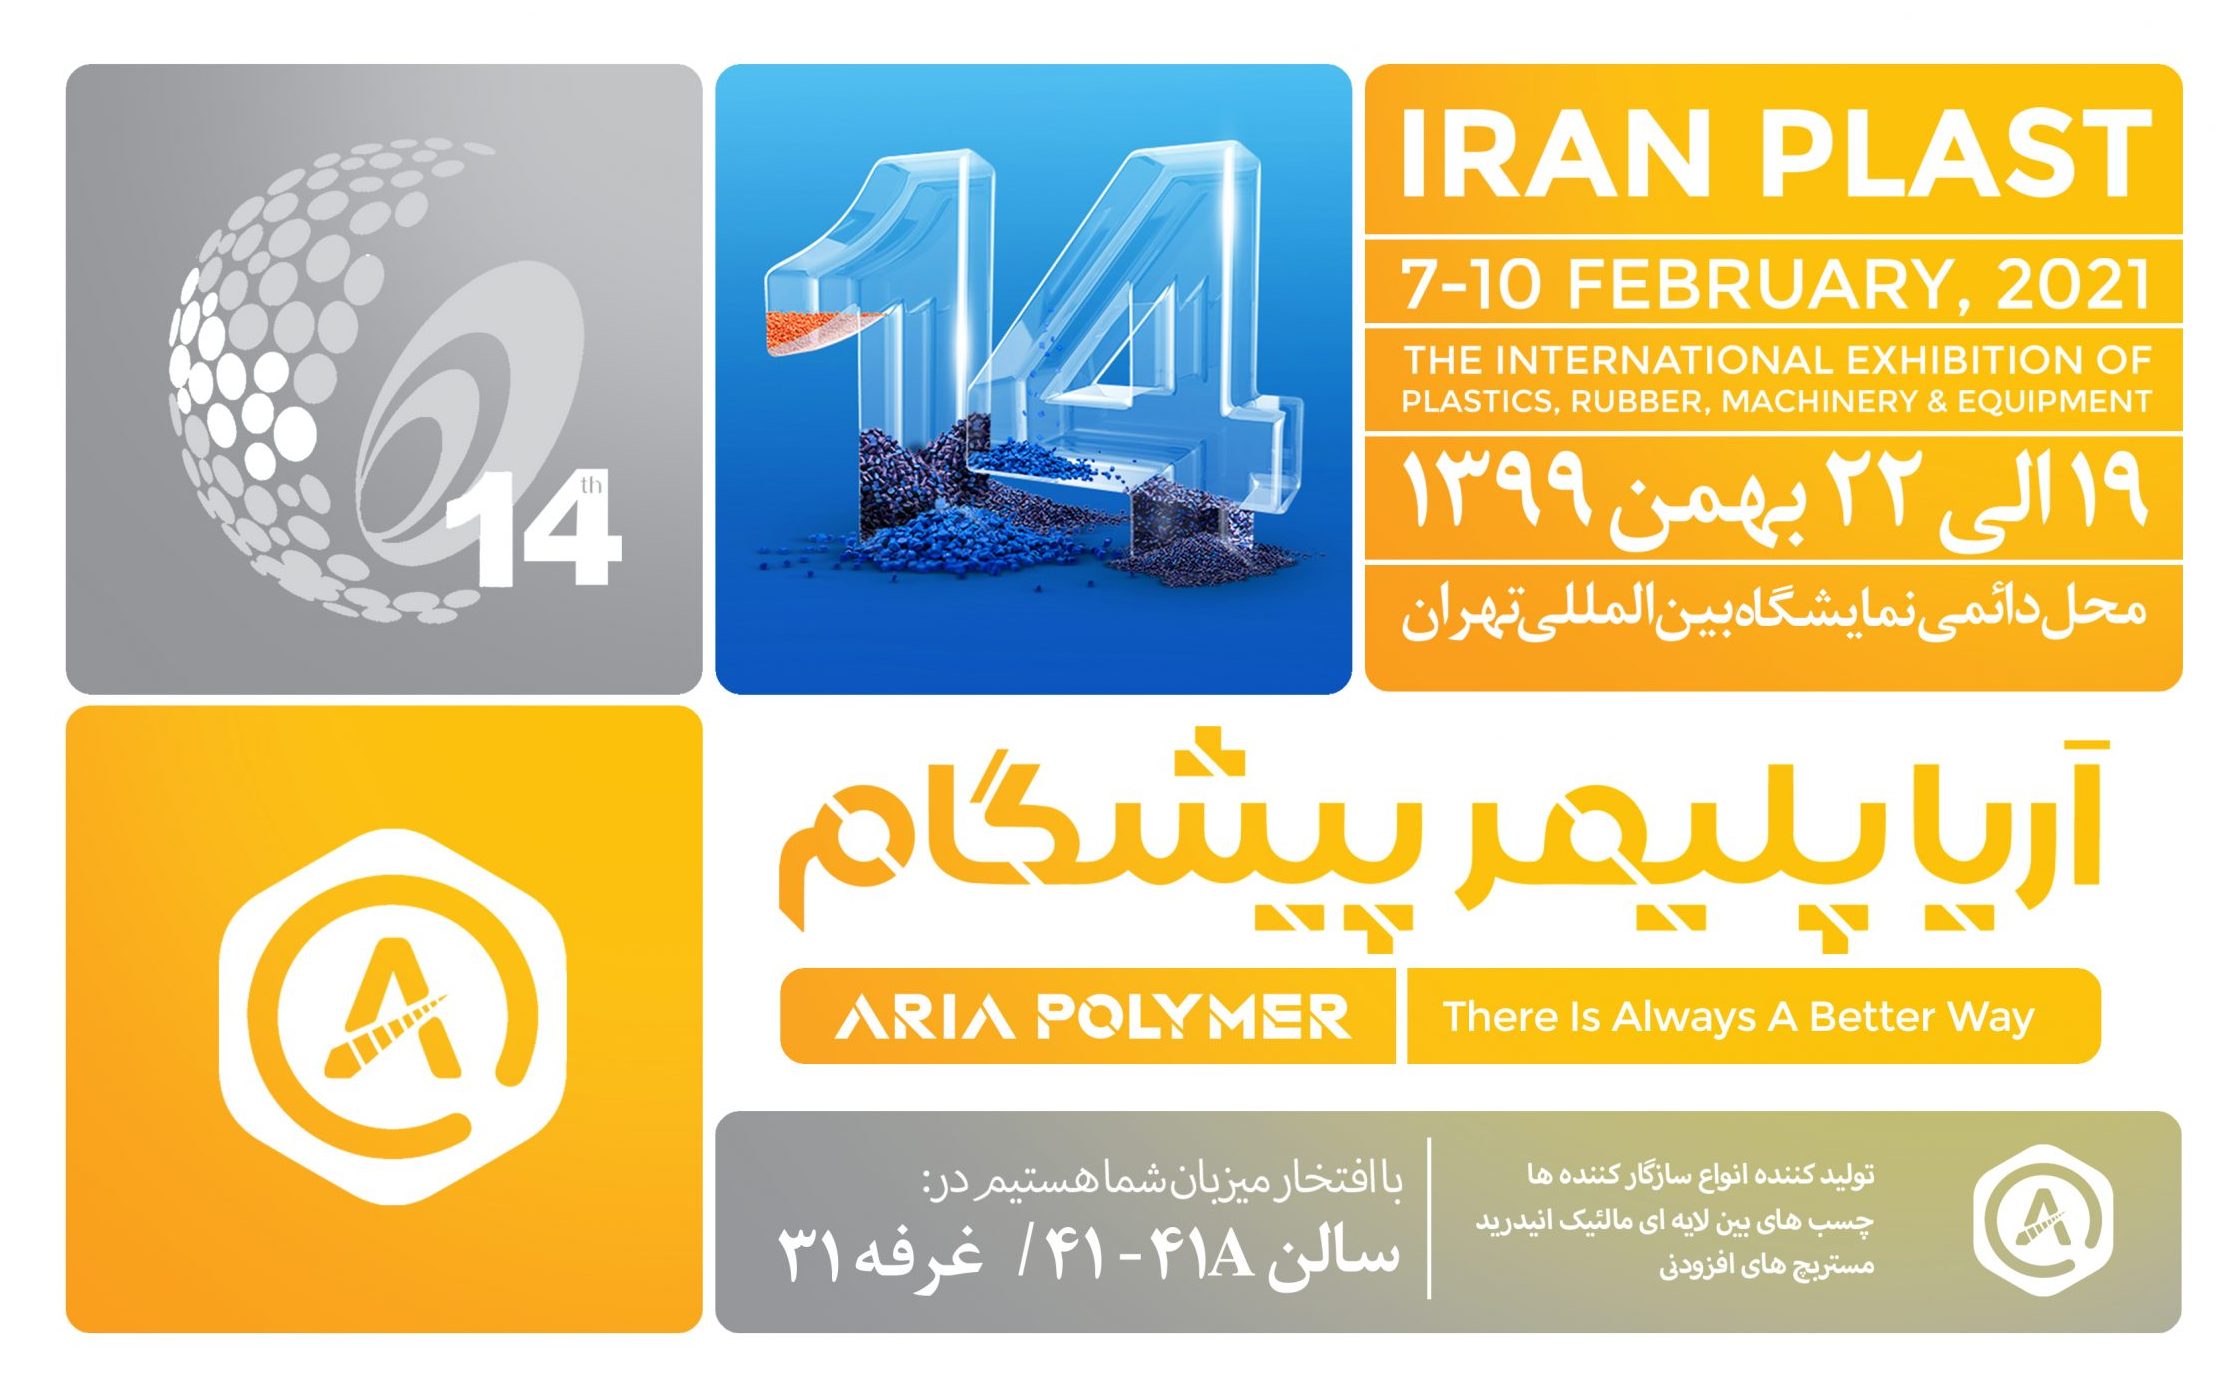 حضور آریا پلیمر پیشگام در چهاردهمین نمایشگاه ایران پلاست